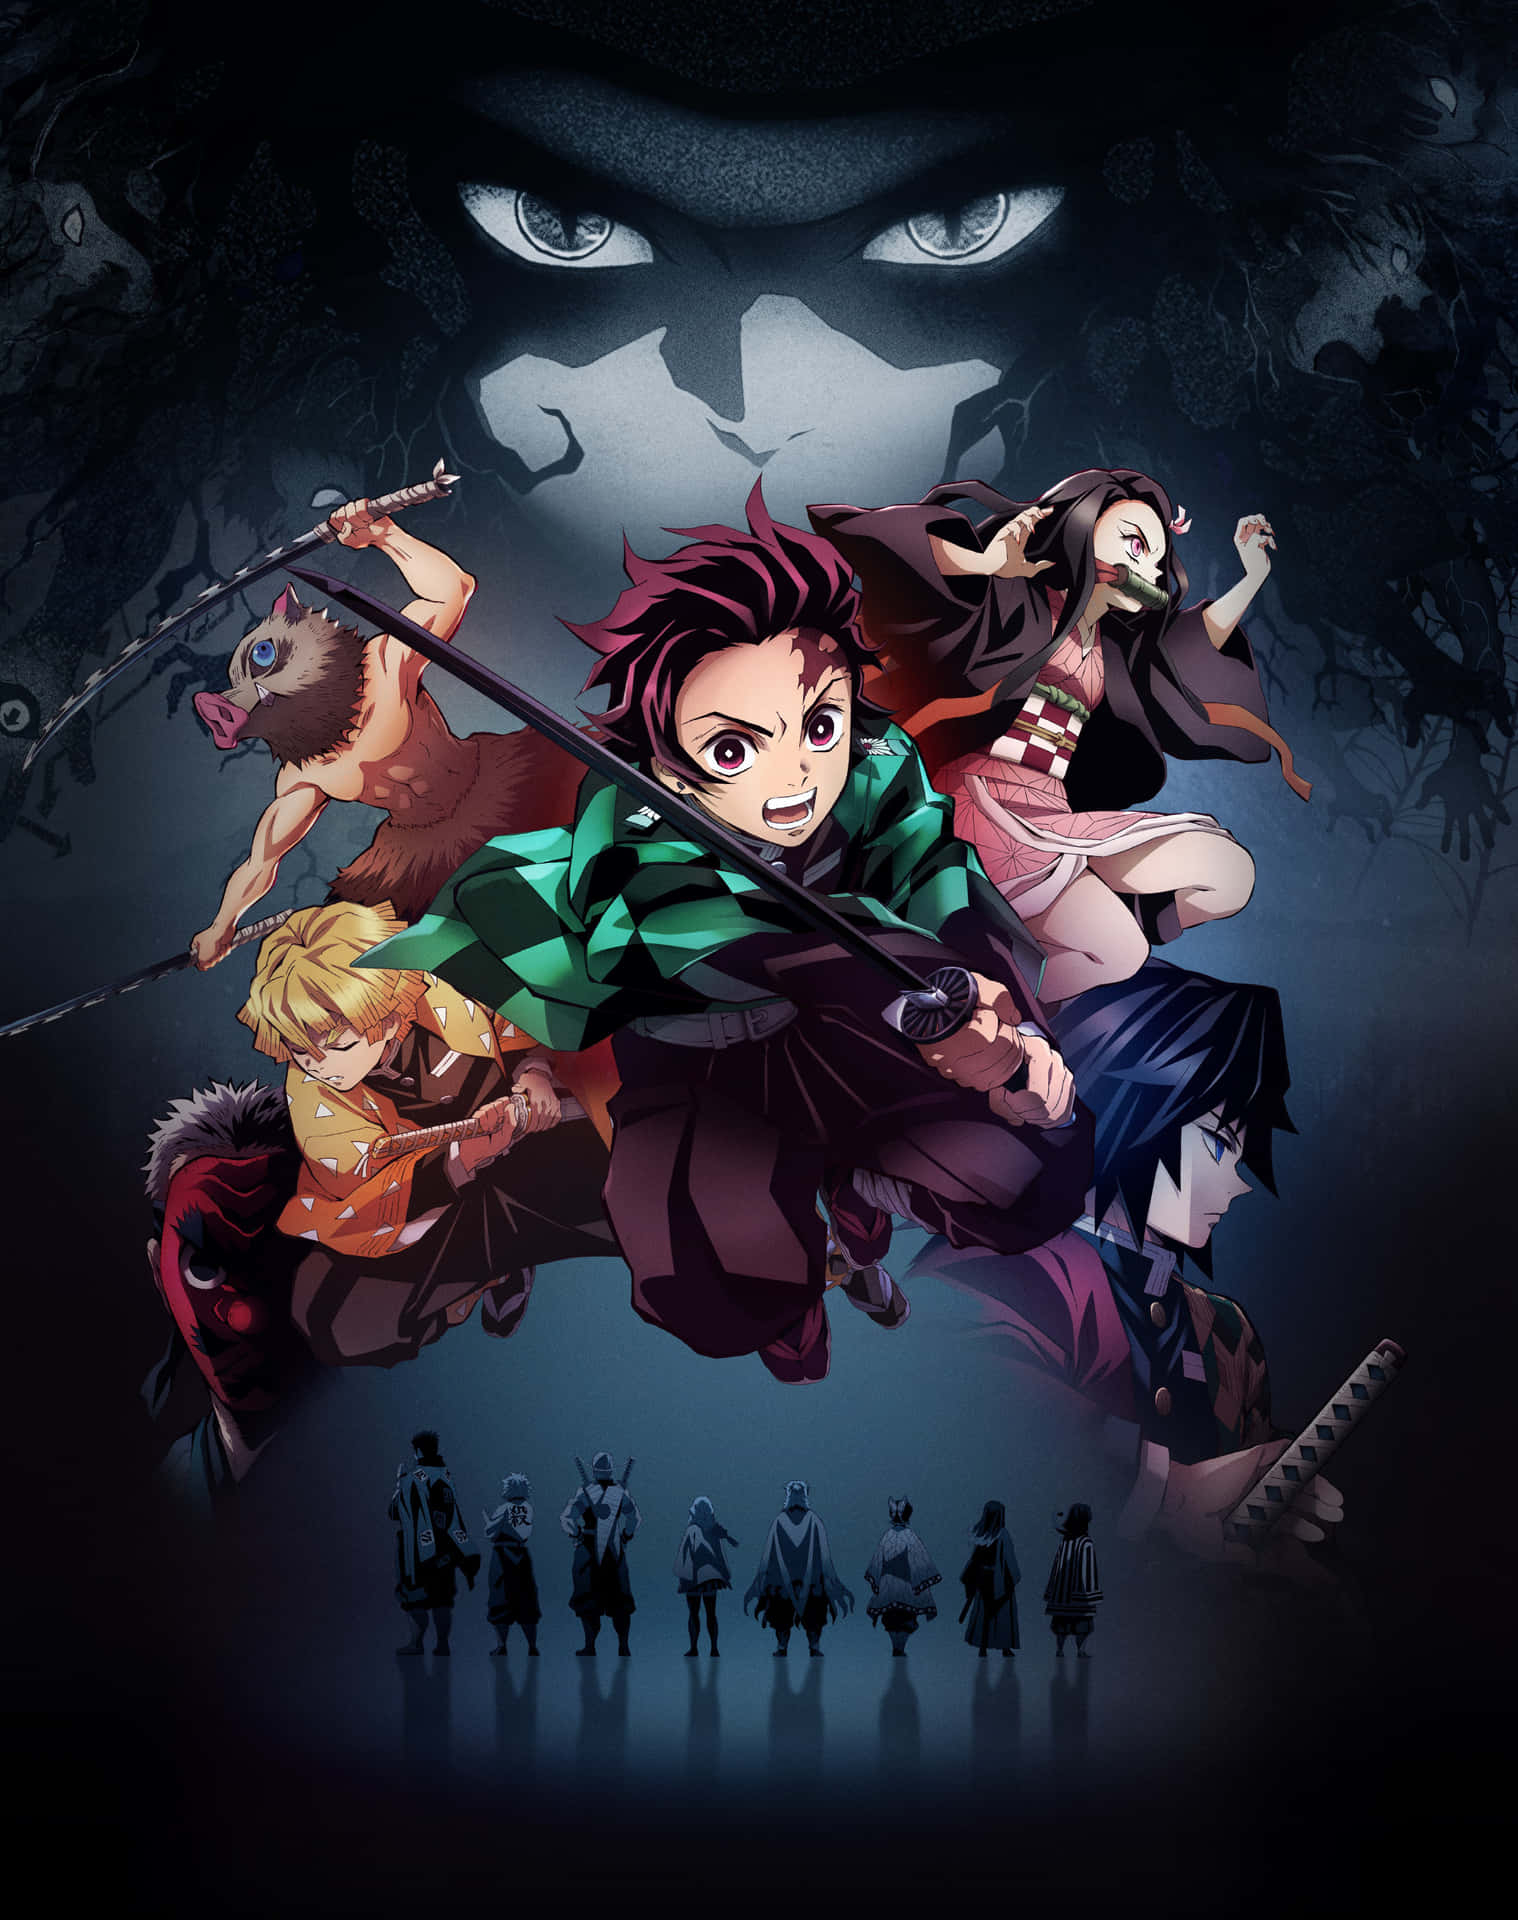 Posteren for anime-serien er fyldt med farver.